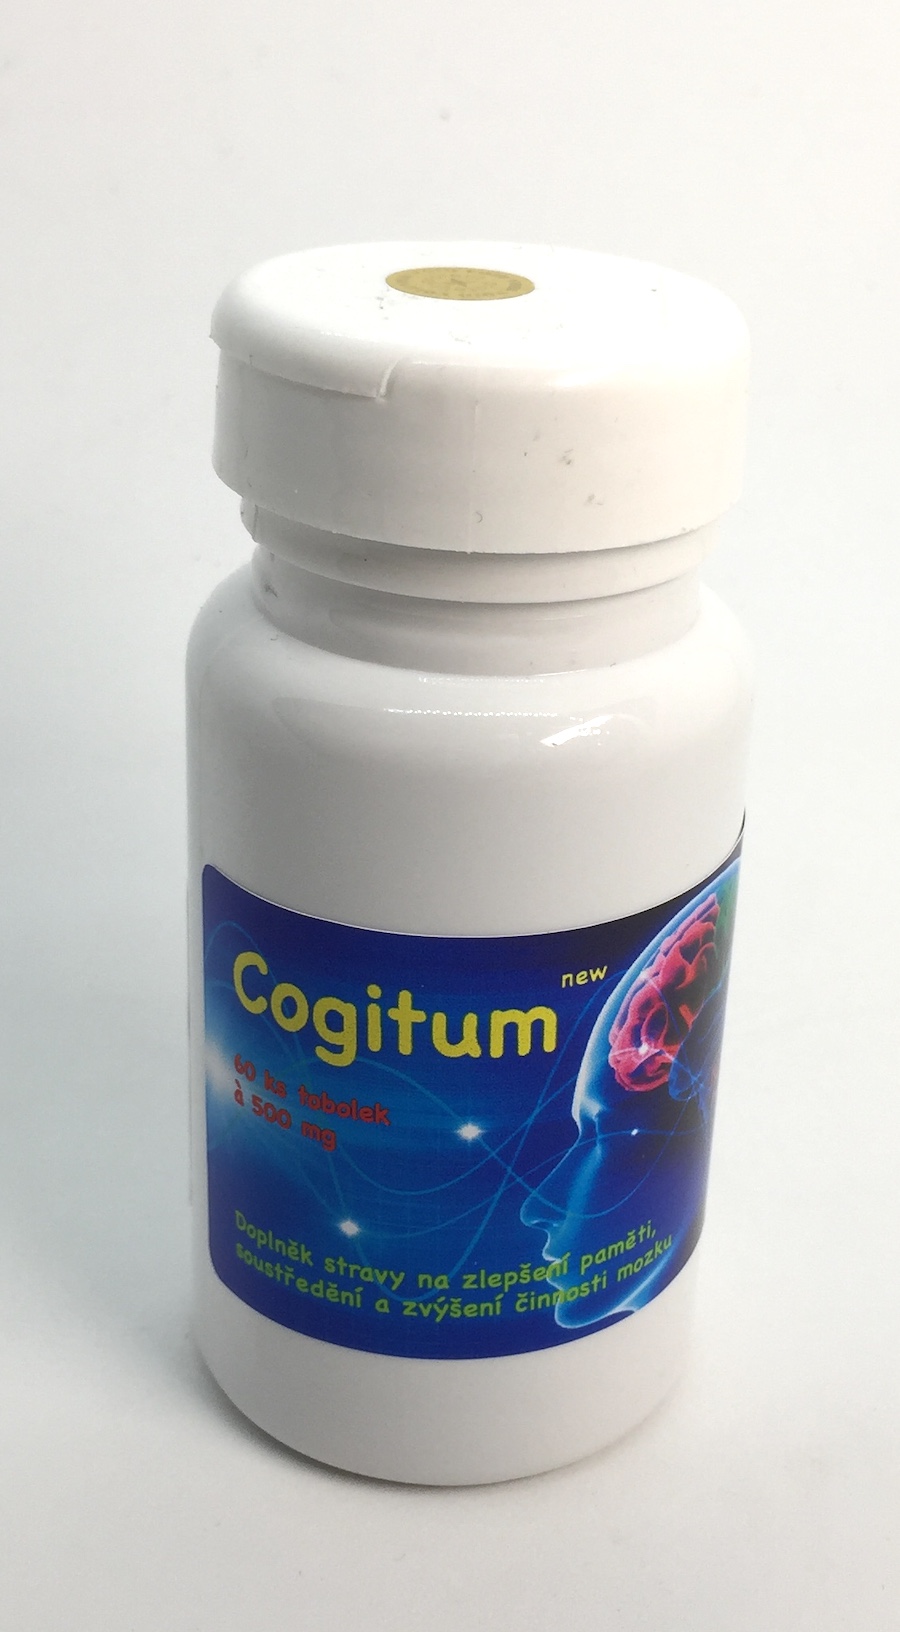 Verbesserung von Gedächtnis und Konzentration: Cogitum new (neue Formel), 60 Kap